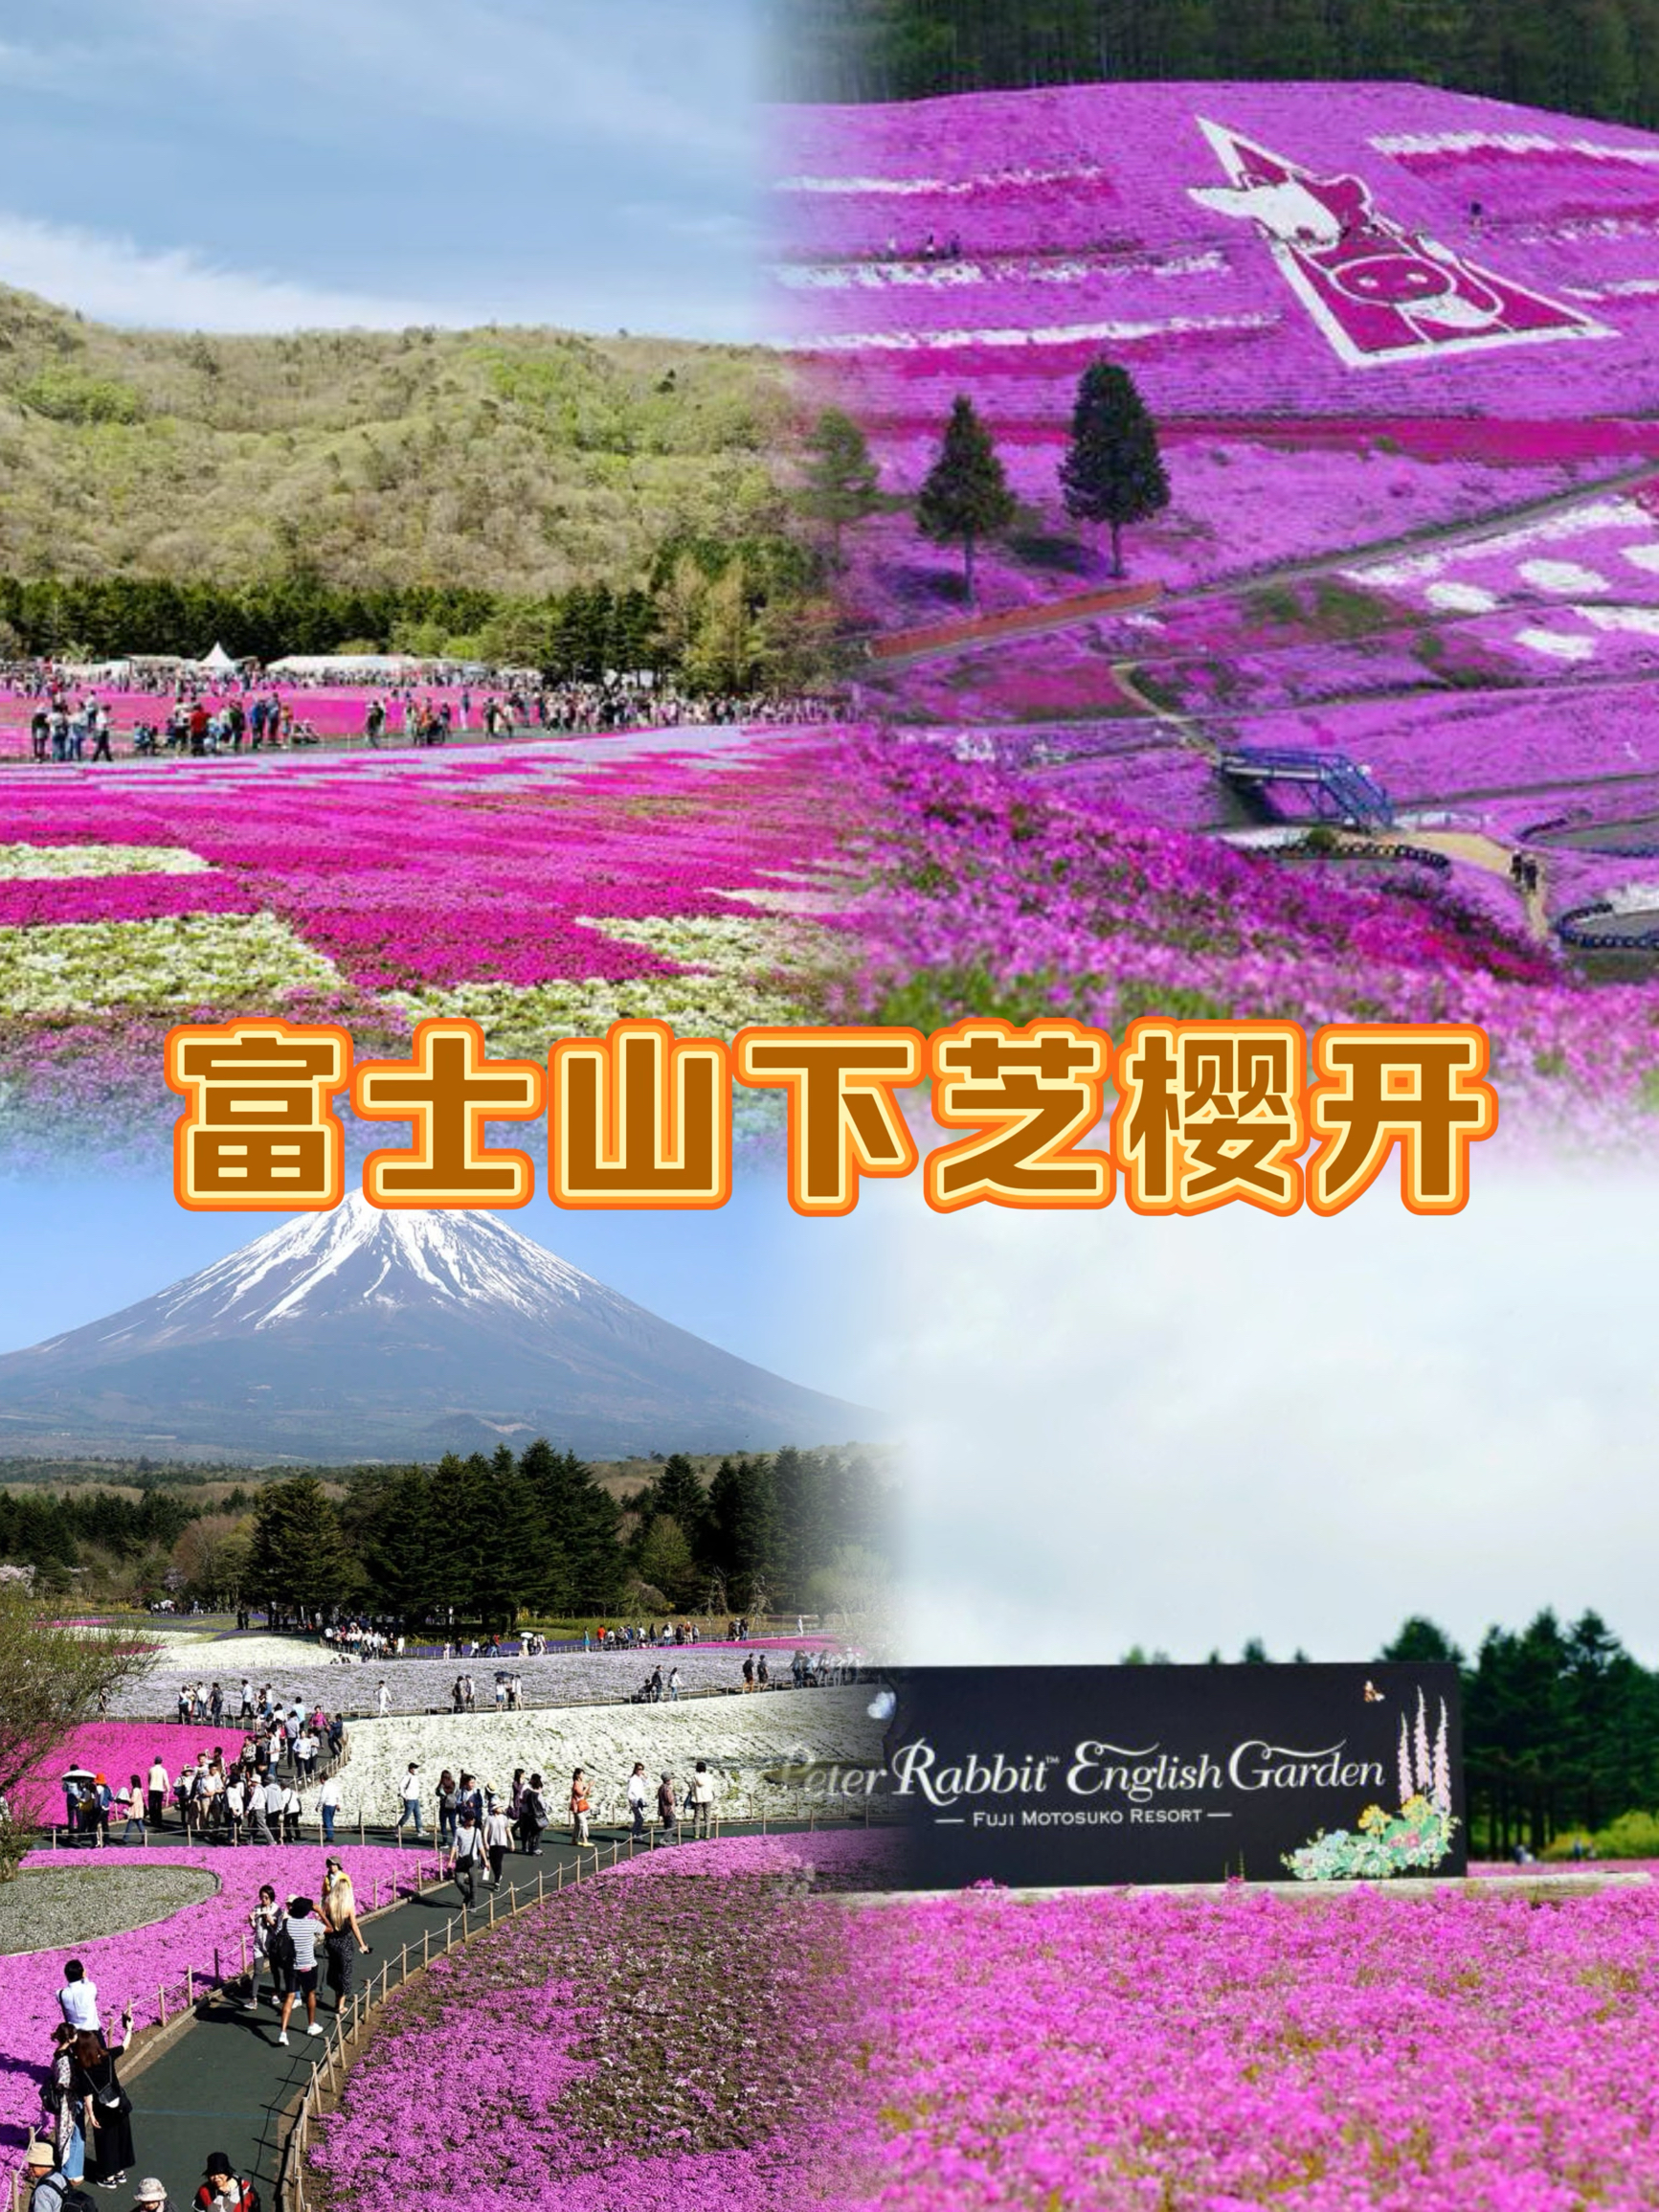 绝美的富士山芝樱盛宴！芝樱祭富士山实在太美妙了～